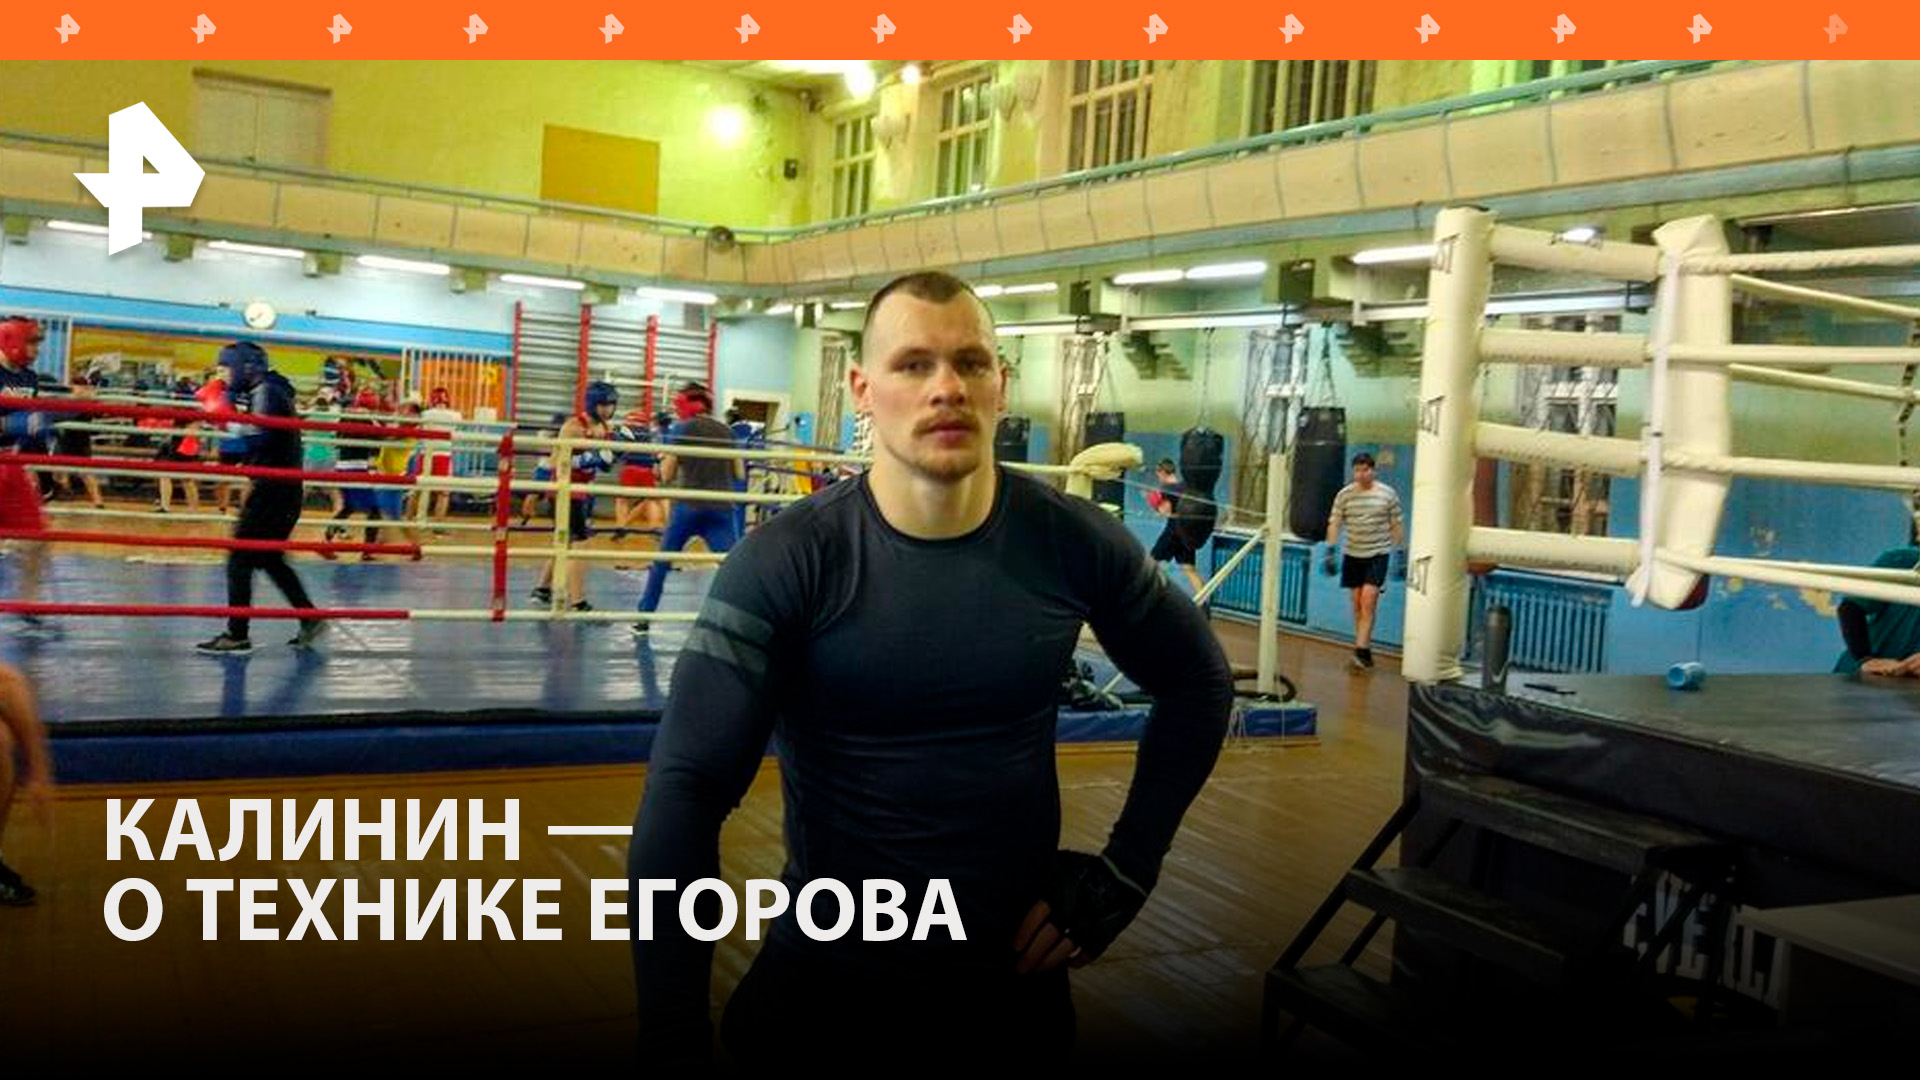 "Бьет сильно и не устает": Сергей Калинин оценил боксерскую технику Егорова